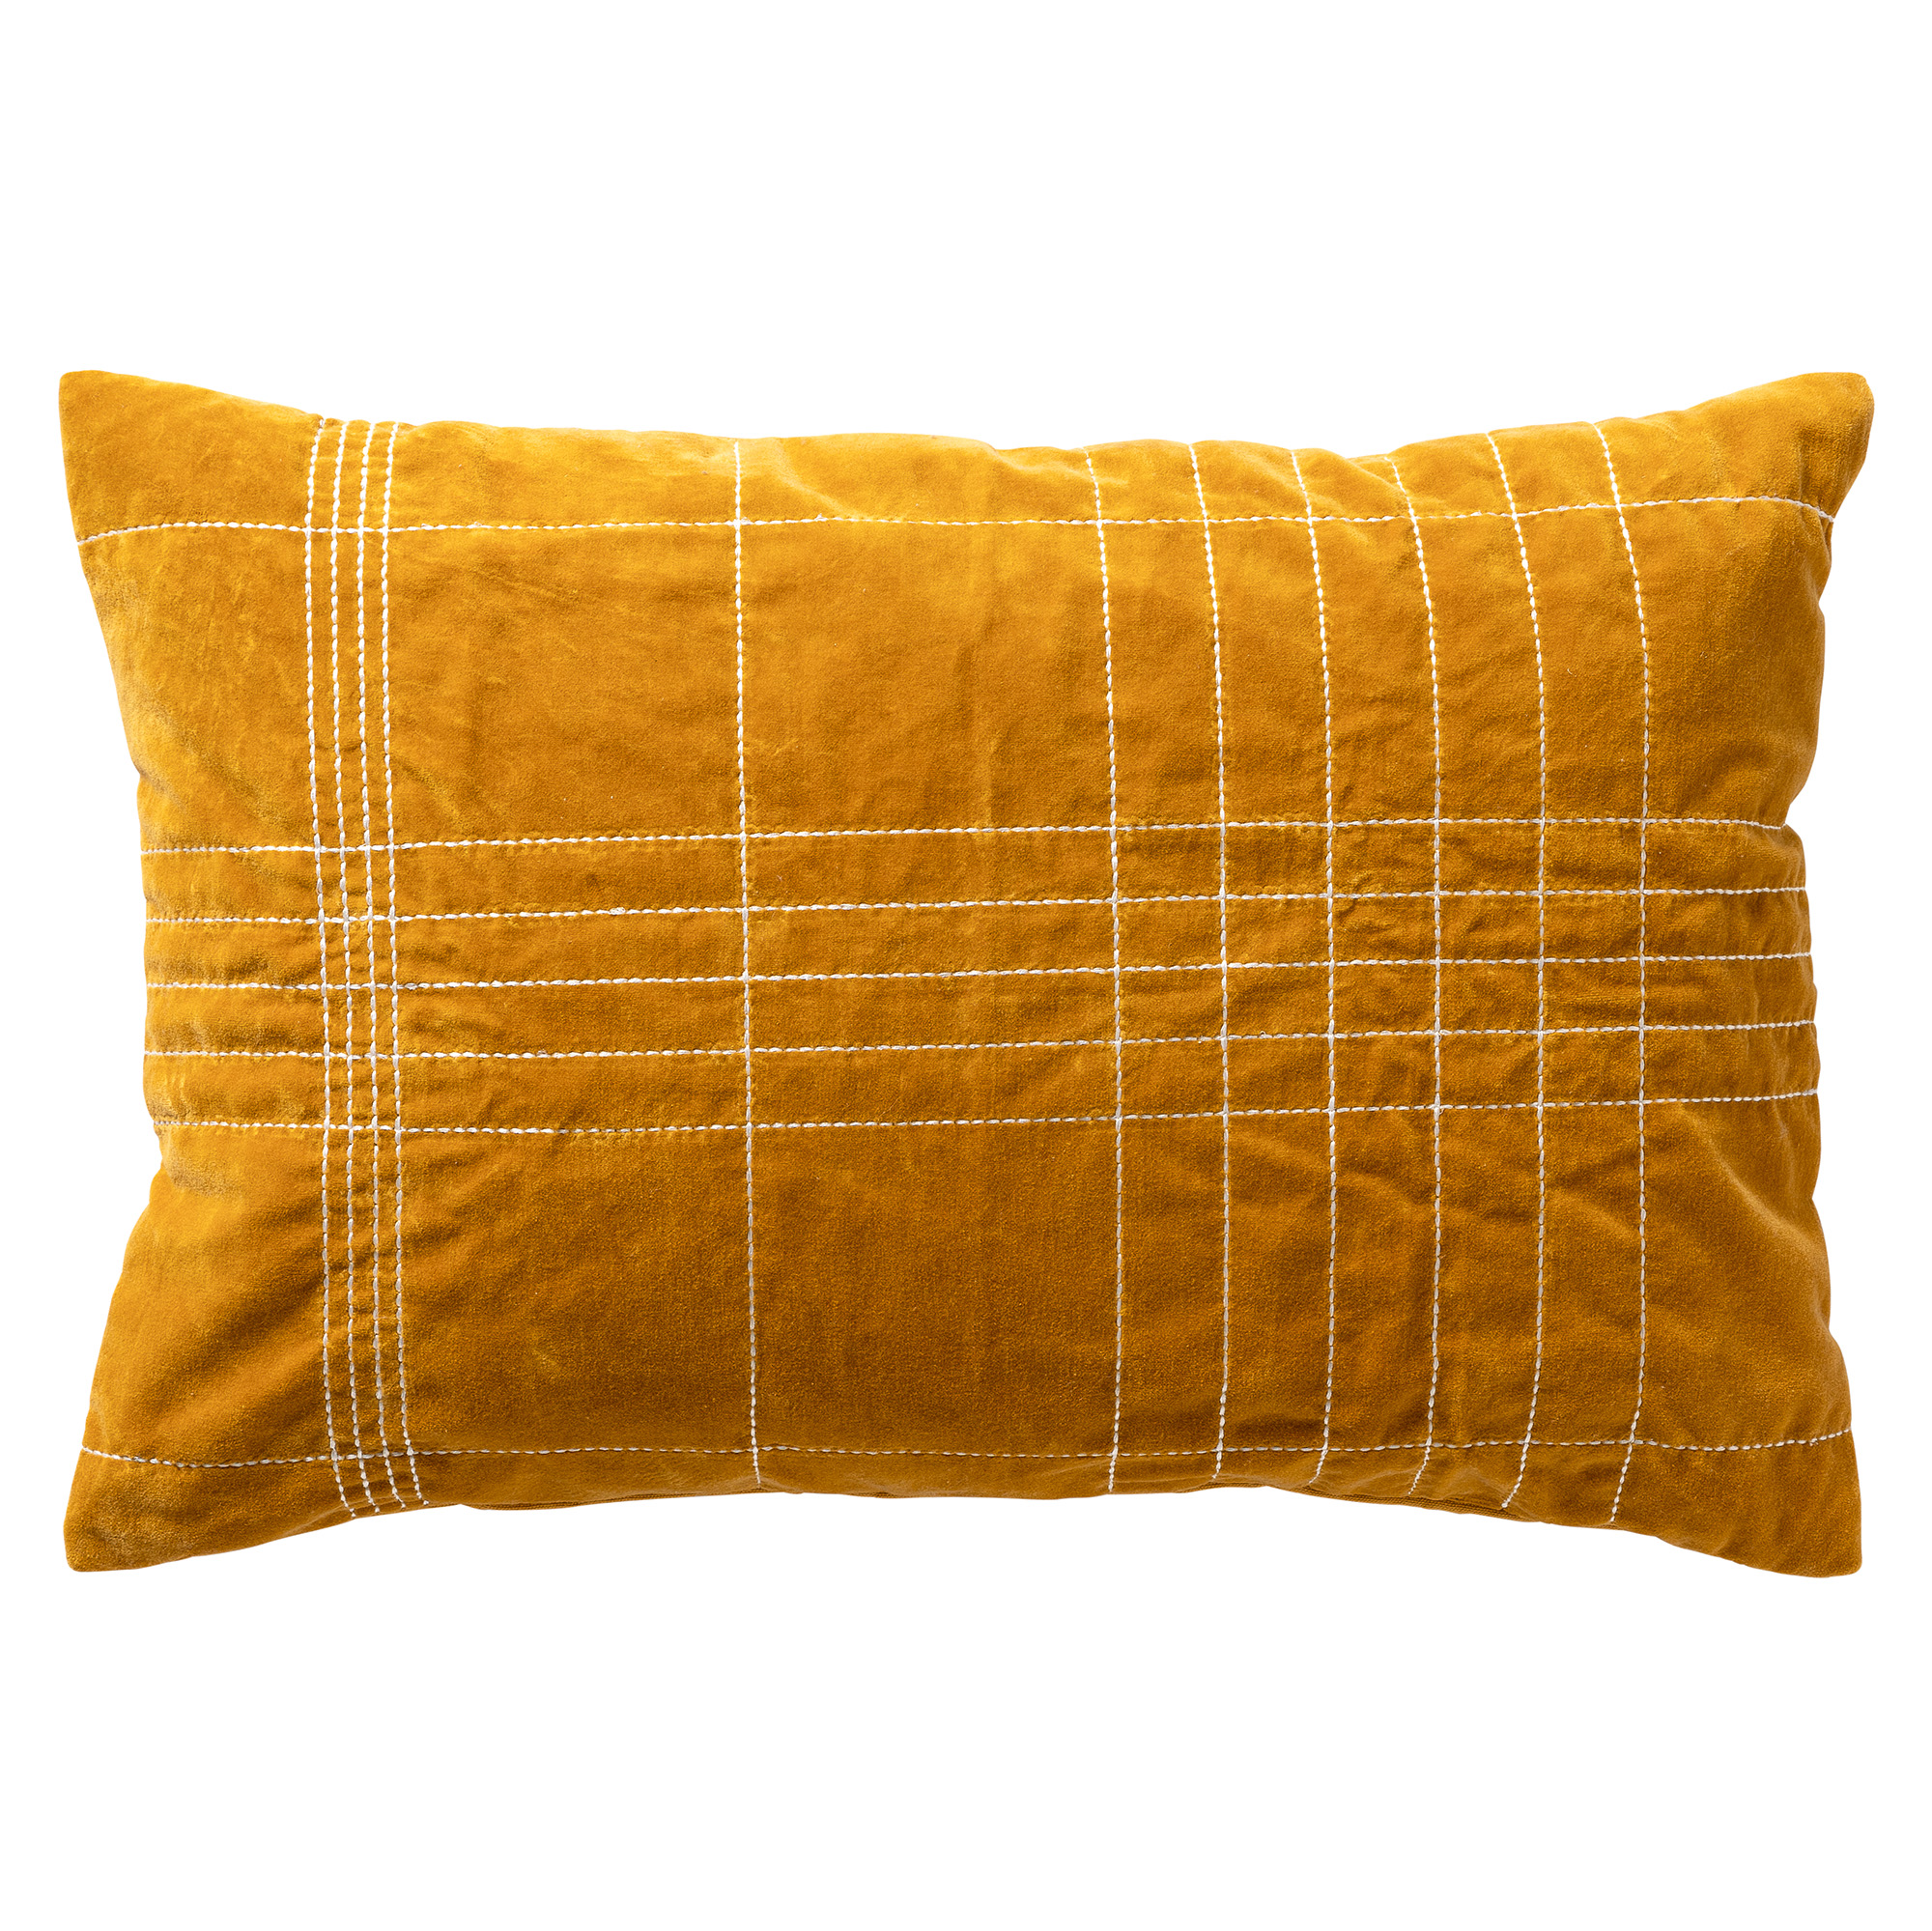 SELAH - Cushion 40x60 cm - Chai Tea - yellow